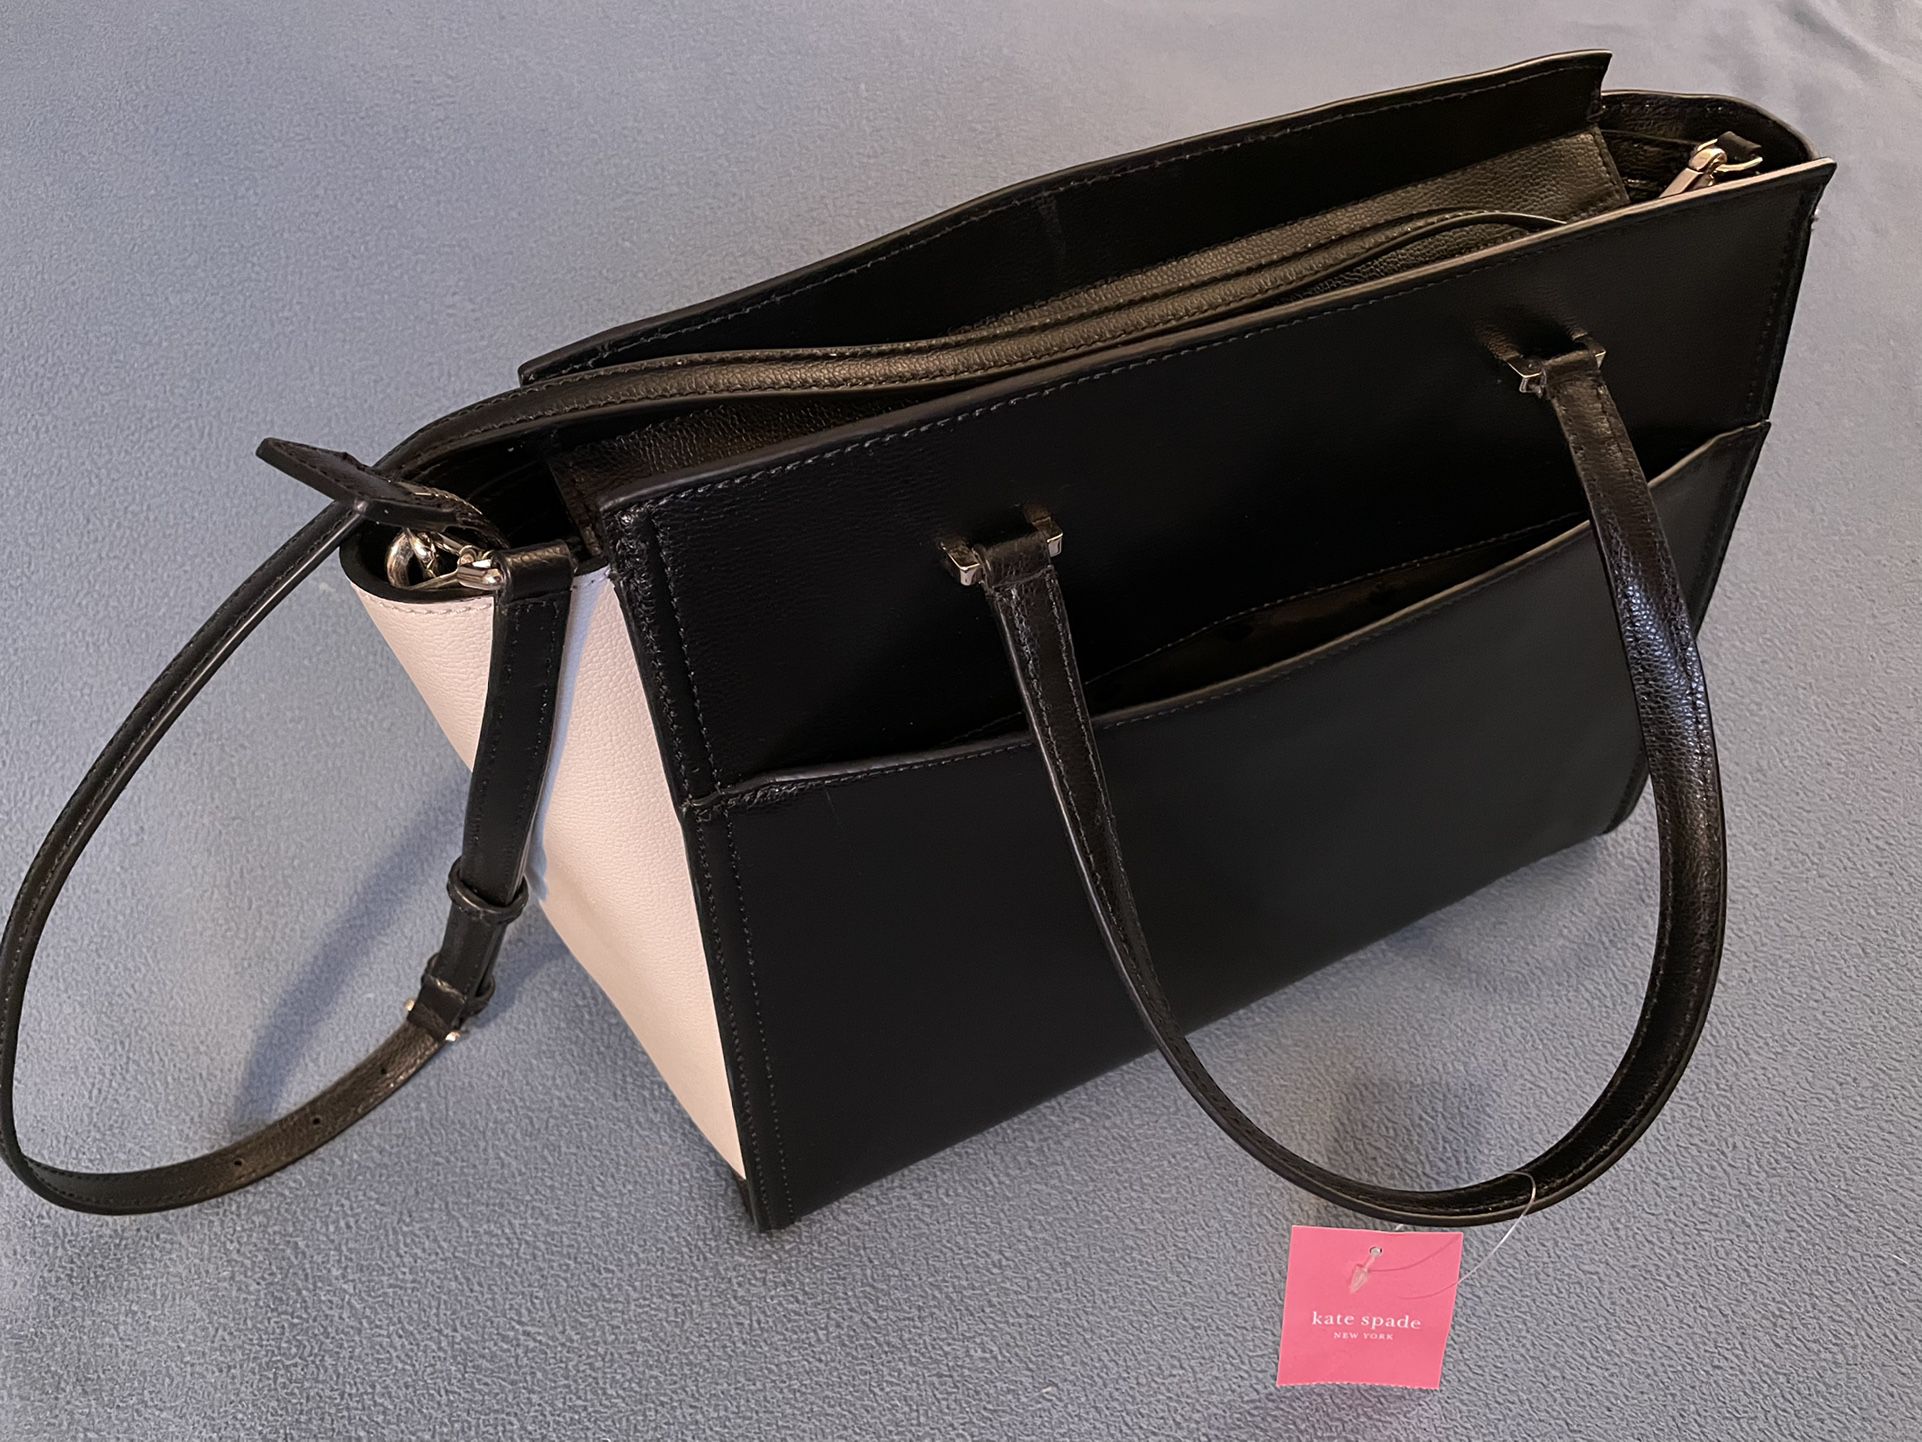 FENDI Vintage Leather Striped Crossbody Shoulder Purse Handbag Bag for Sale  in Bayport, NY - OfferUp